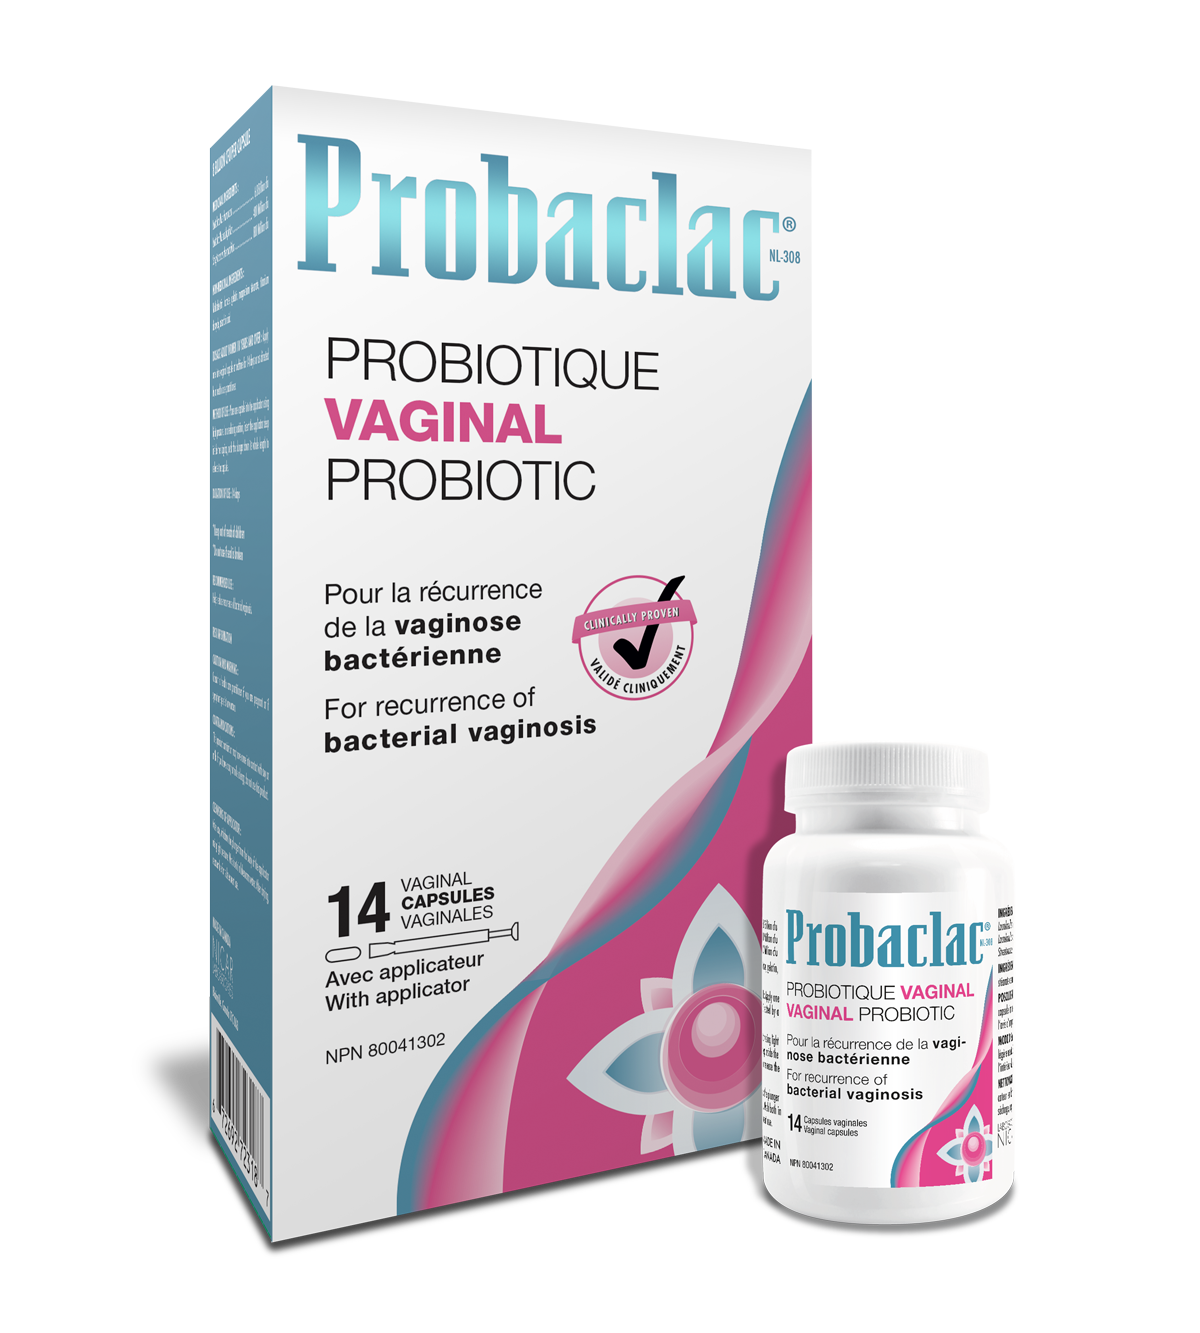 Probaclac Vaginal Probiotic, Bacterial Vaginosis, Ph Balance